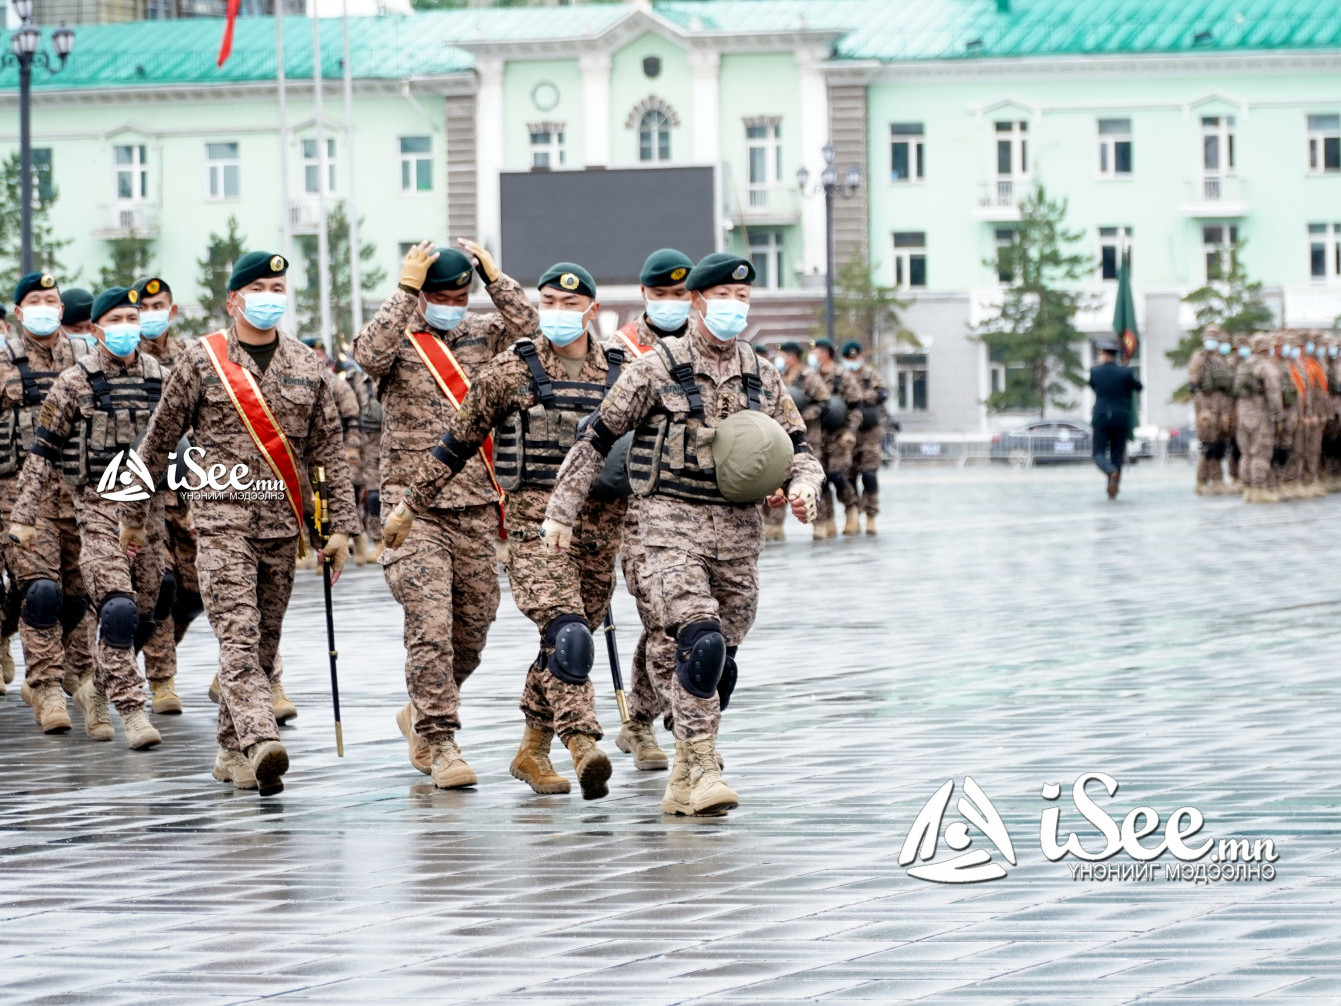 ФОТО: Монгол Улсын Зэвсэгт хүчнээс Афганистанд үүрэг гүйцэтгэсэн цэргийн багуудад хүндэтгэл үзүүллээ